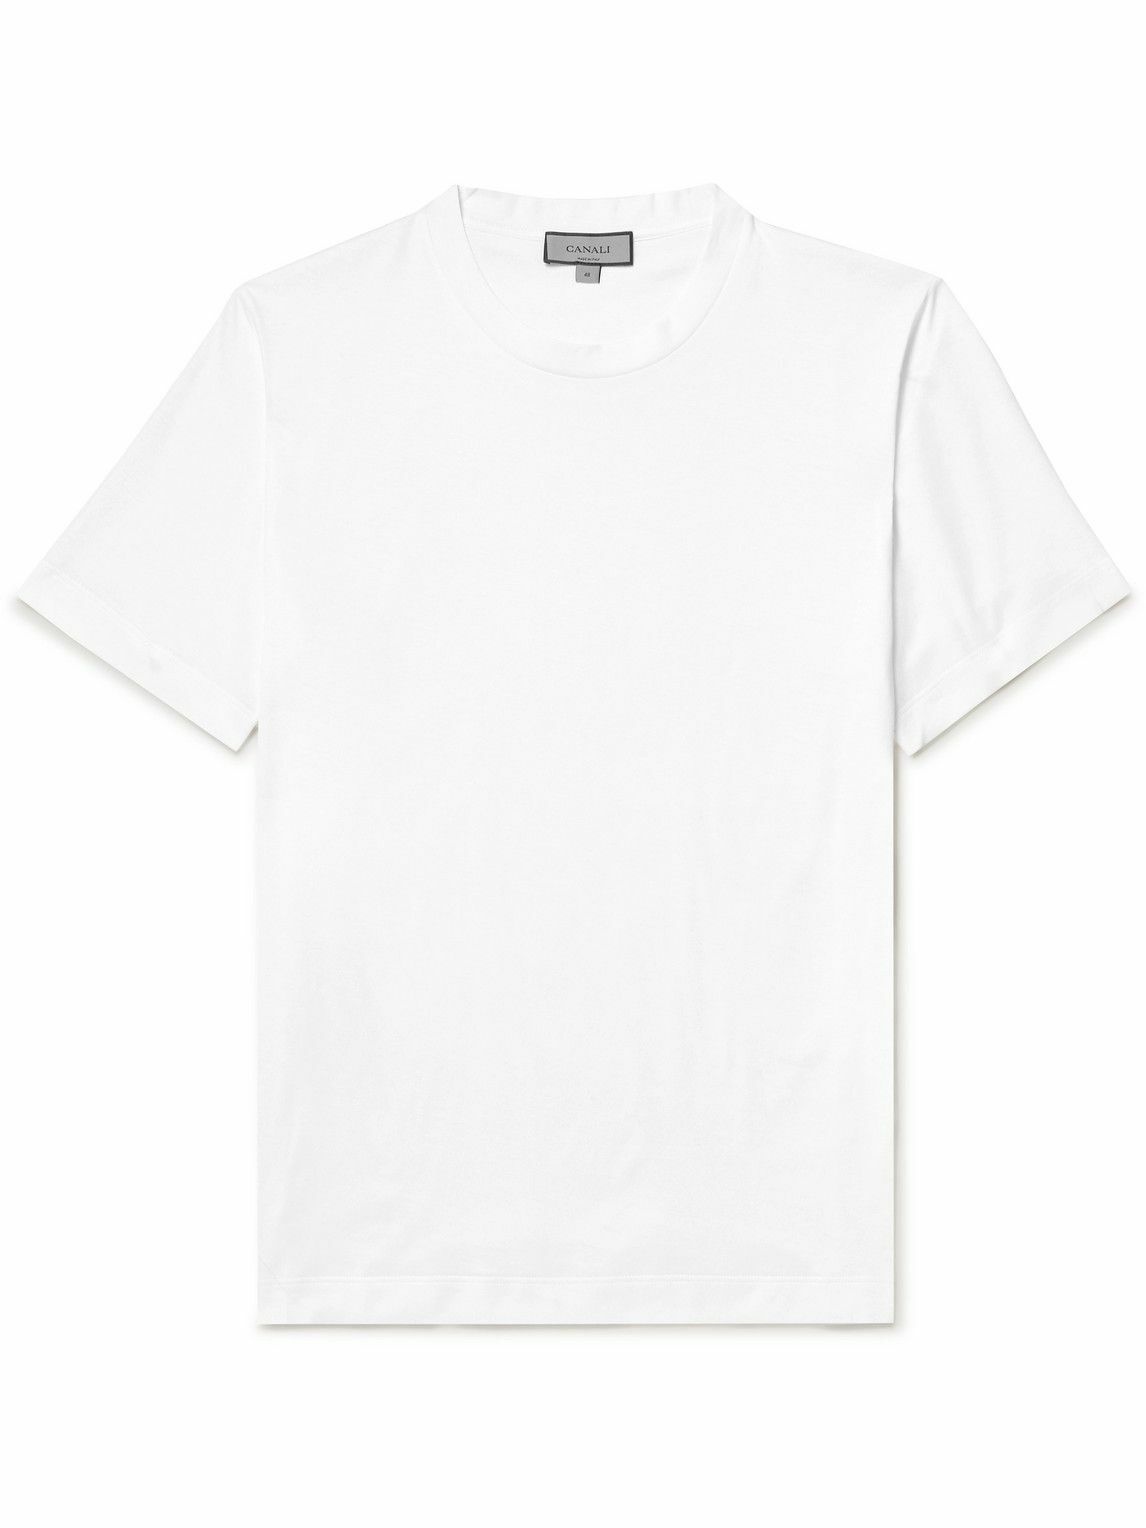 Canali - Cotton-Jersey T-Shirt - White Canali